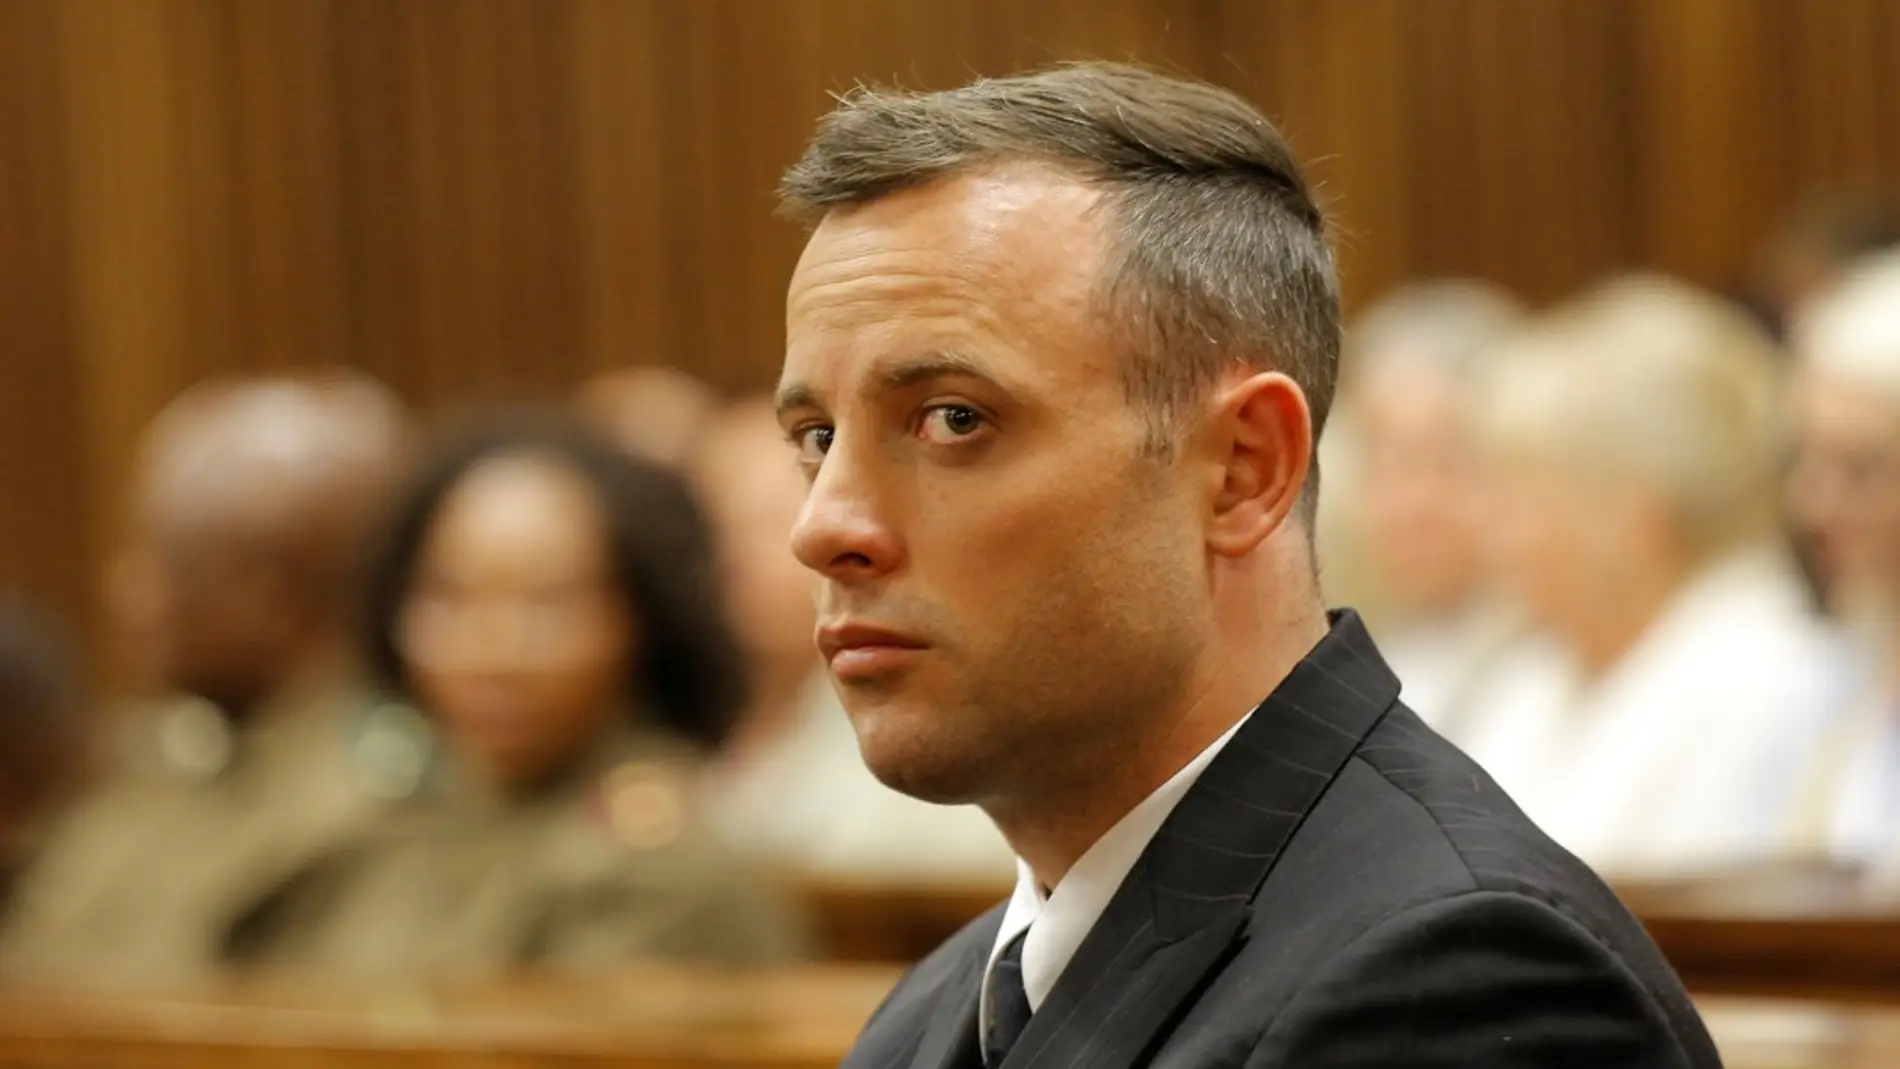 Oscar Pistorius sale de la cárcel casi once años después de matar a su novia